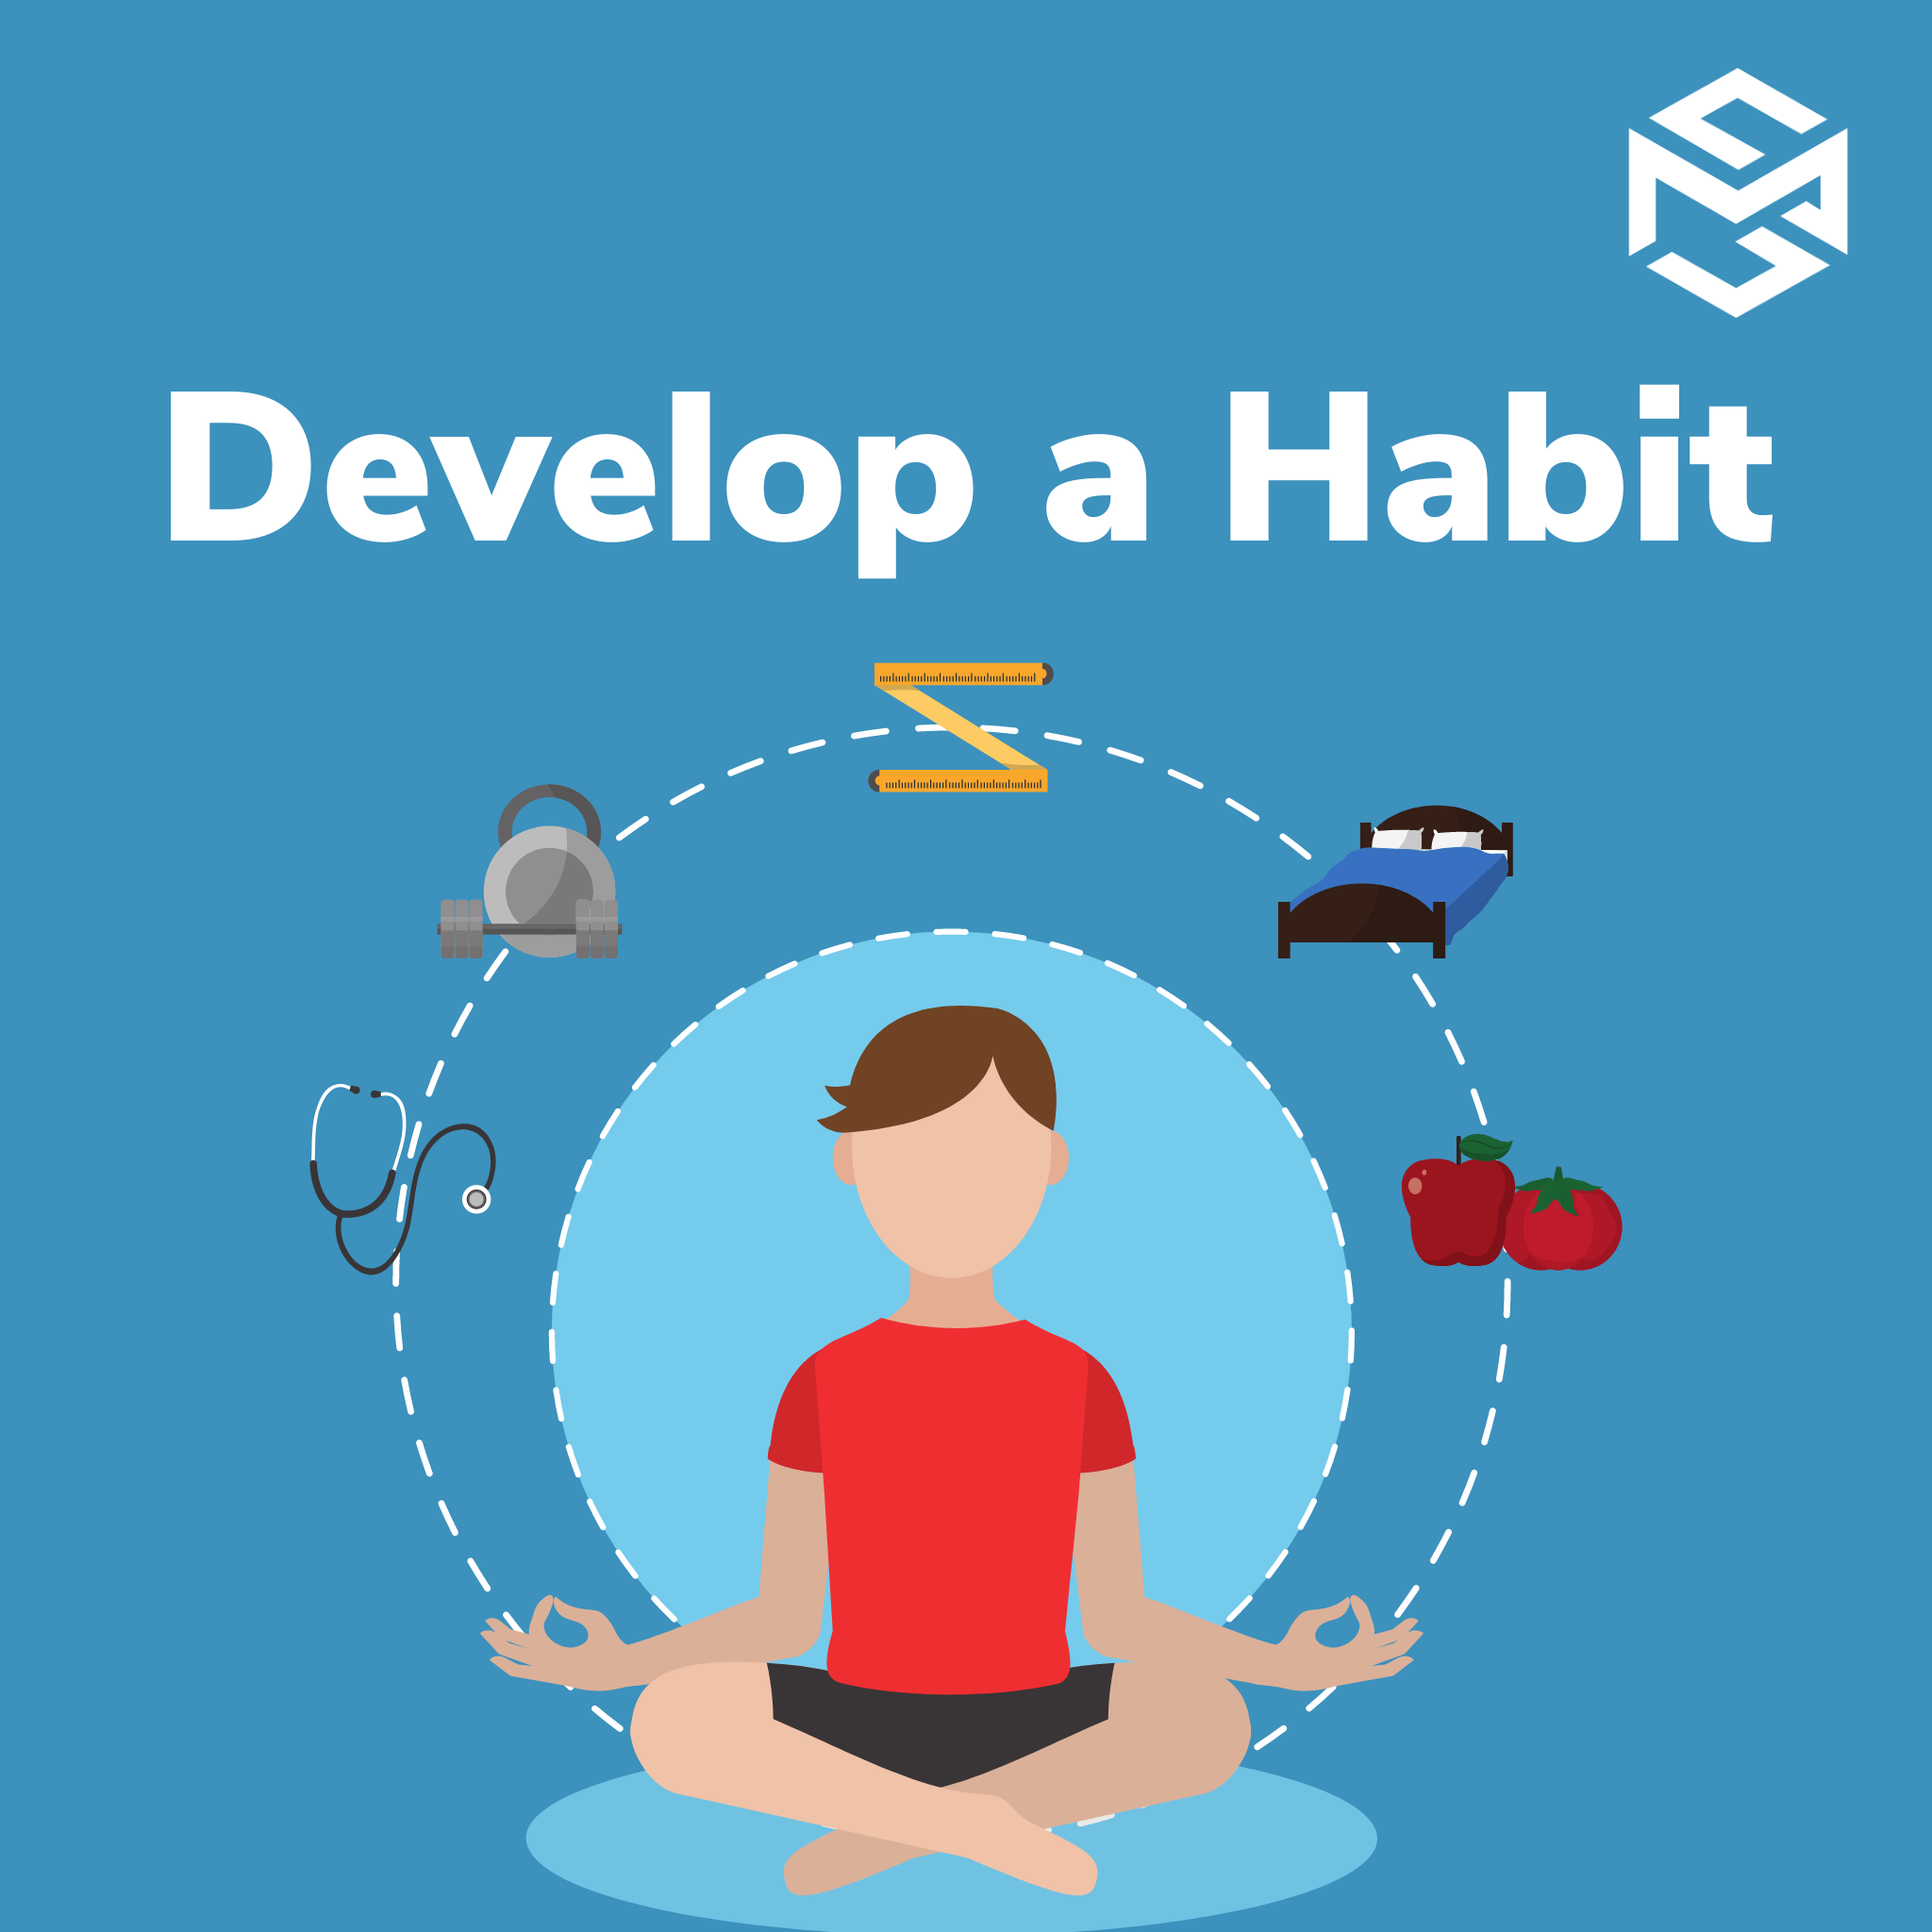 Build a Habit